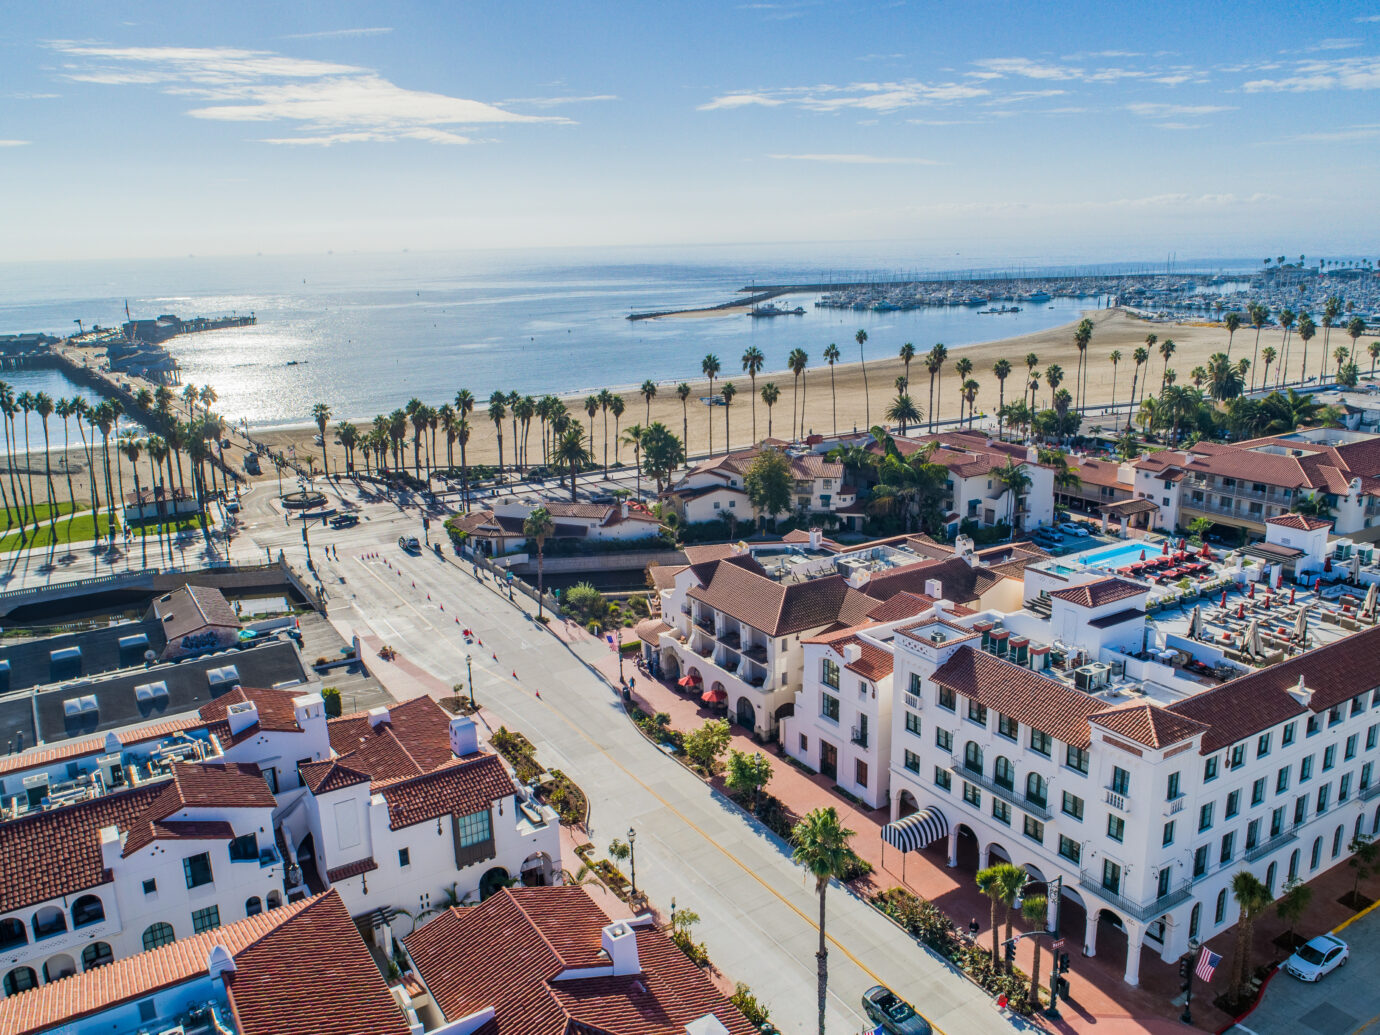 Aerial view of Hotel Californian, Santa Barbara, CA